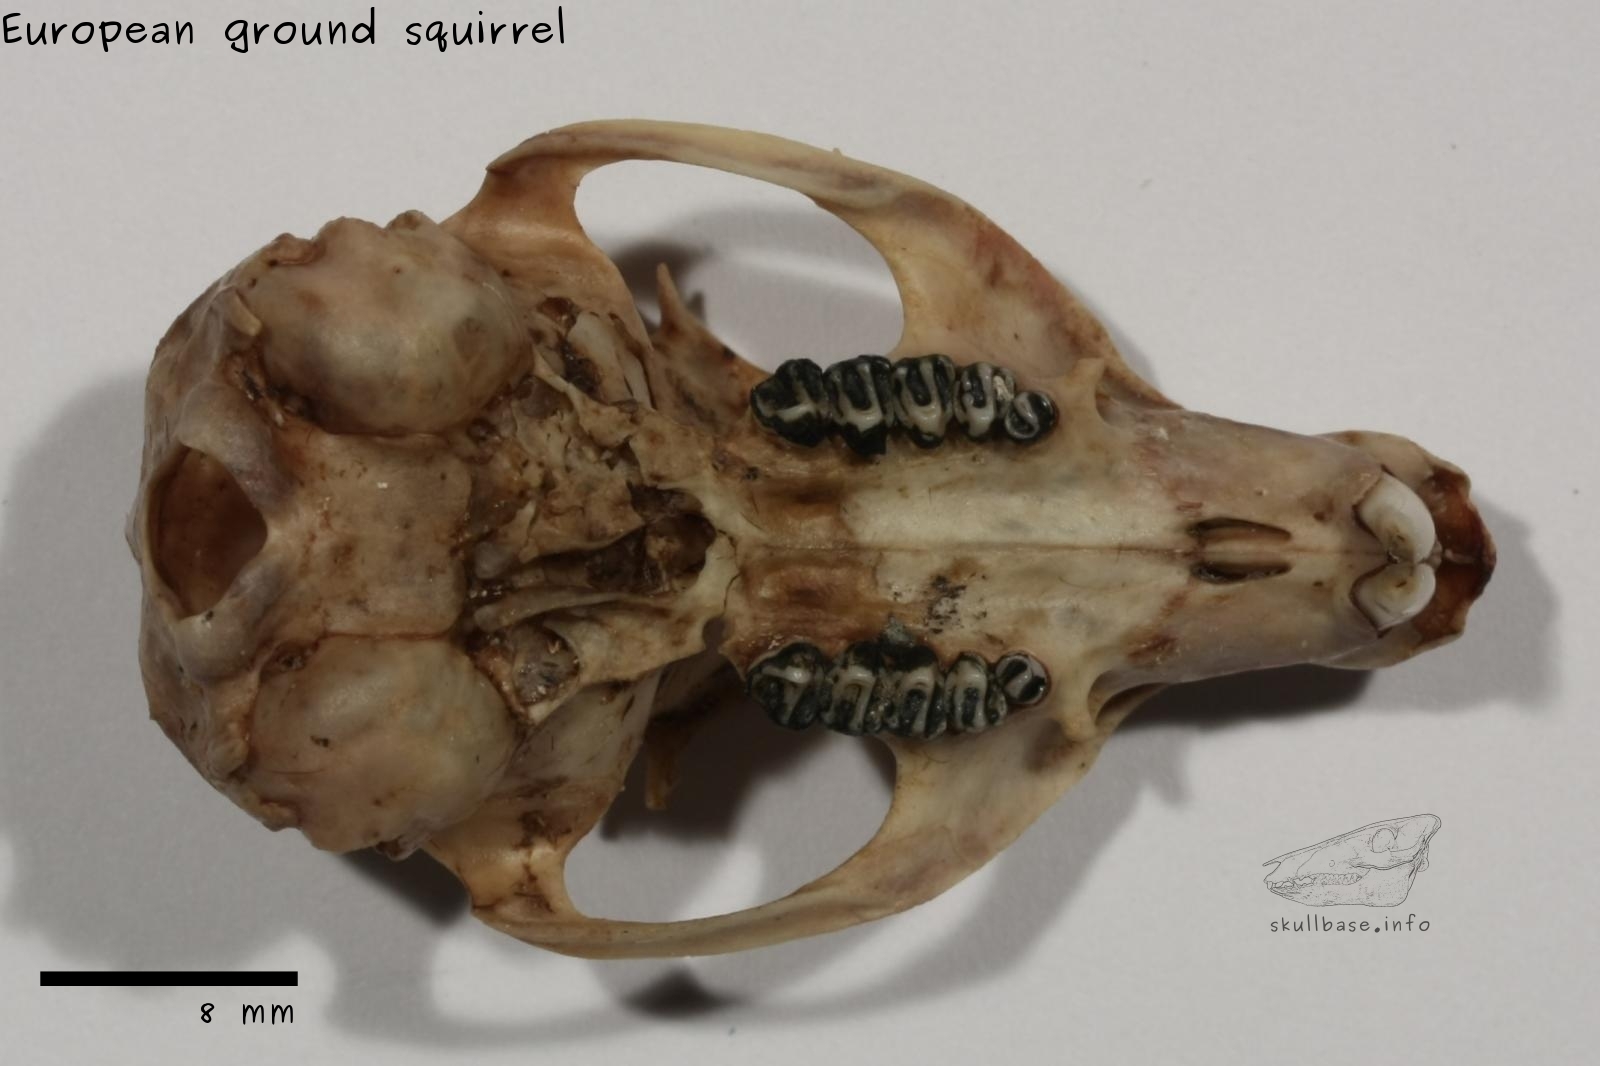 European ground squirrel (Spermophilus citellus) skull ventral view